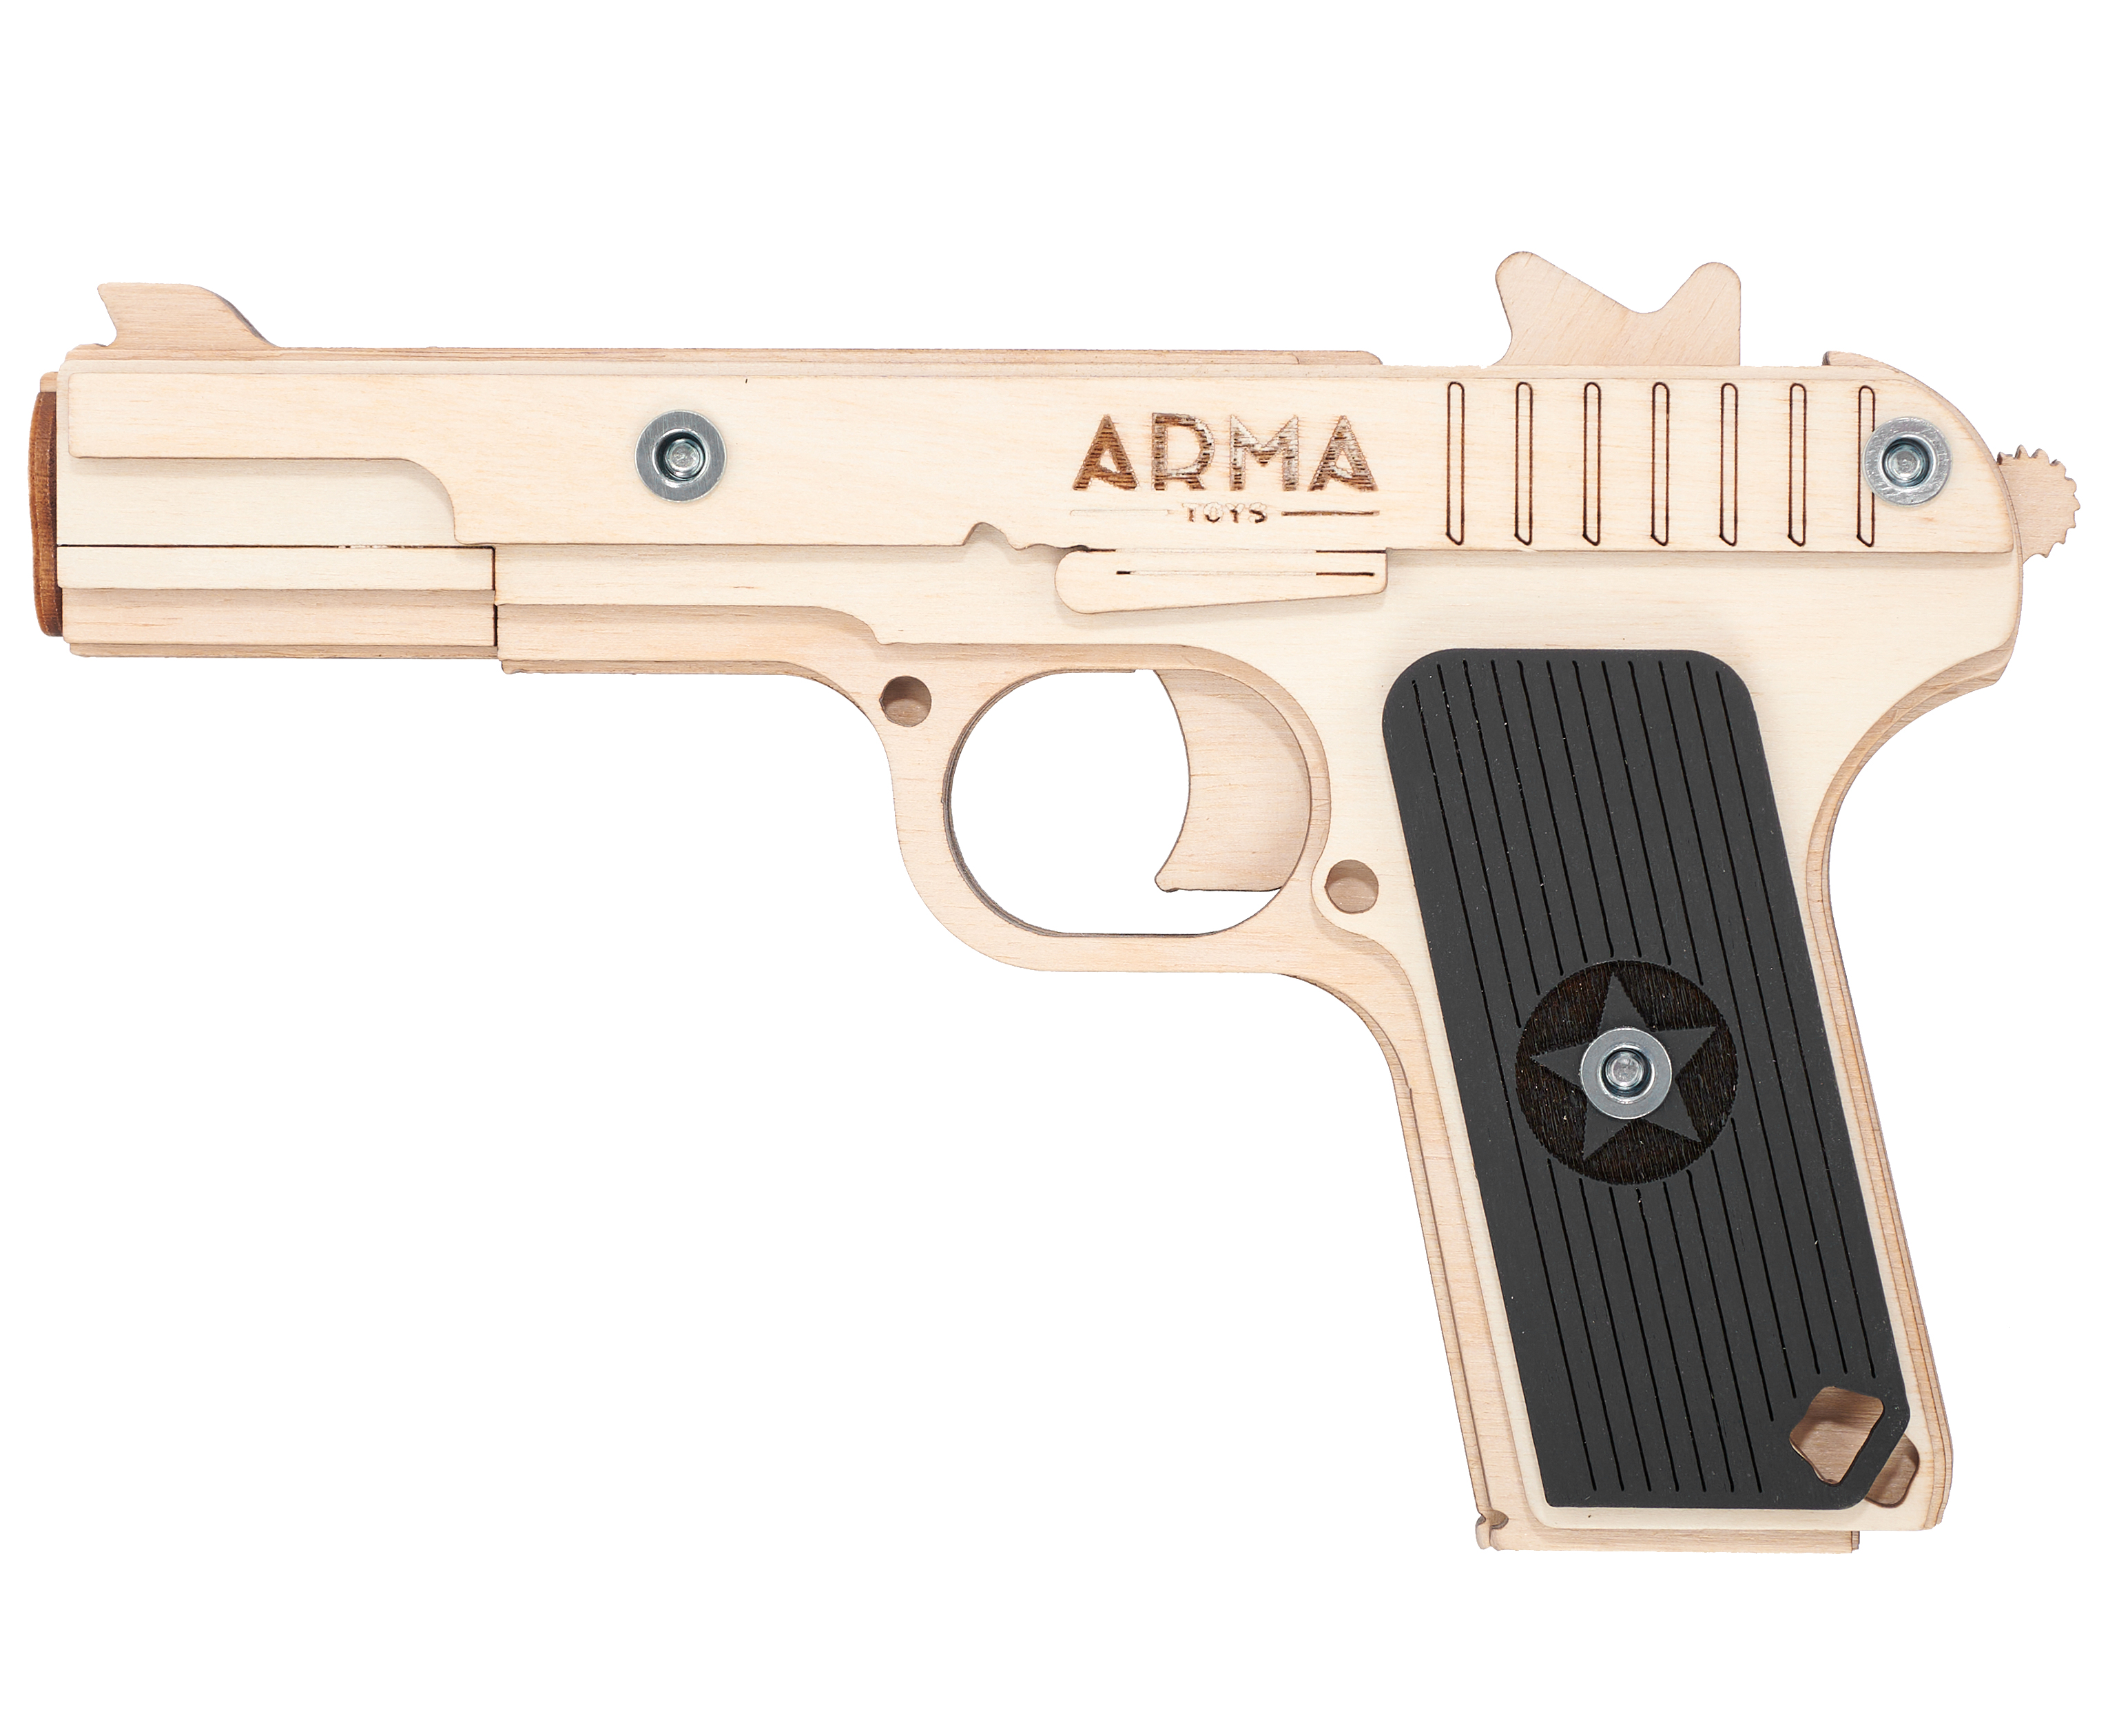 Резинкострел игрушечный Arma toys пистолет ТТ макет, Токарев, AT019 резинкострел arma toys пистолет тт тульский токарева